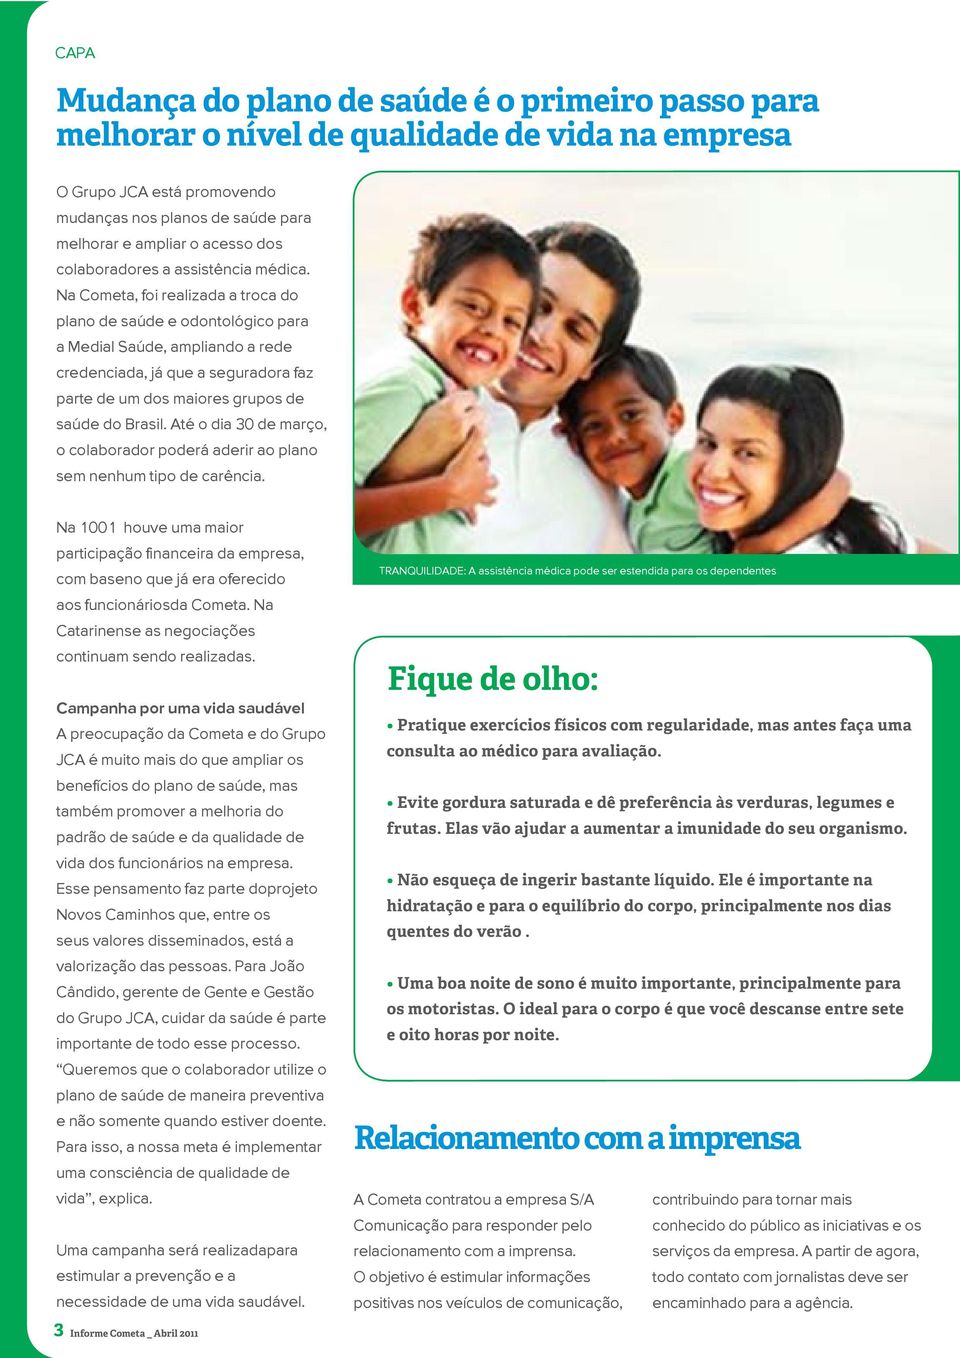 Na Cometa, foi realizada a troca do plano de saúde e odontológico para a Medial Saúde, ampliando a rede credenciada, já que a seguradora faz parte de um dos maiores grupos de saúde do Brasil.